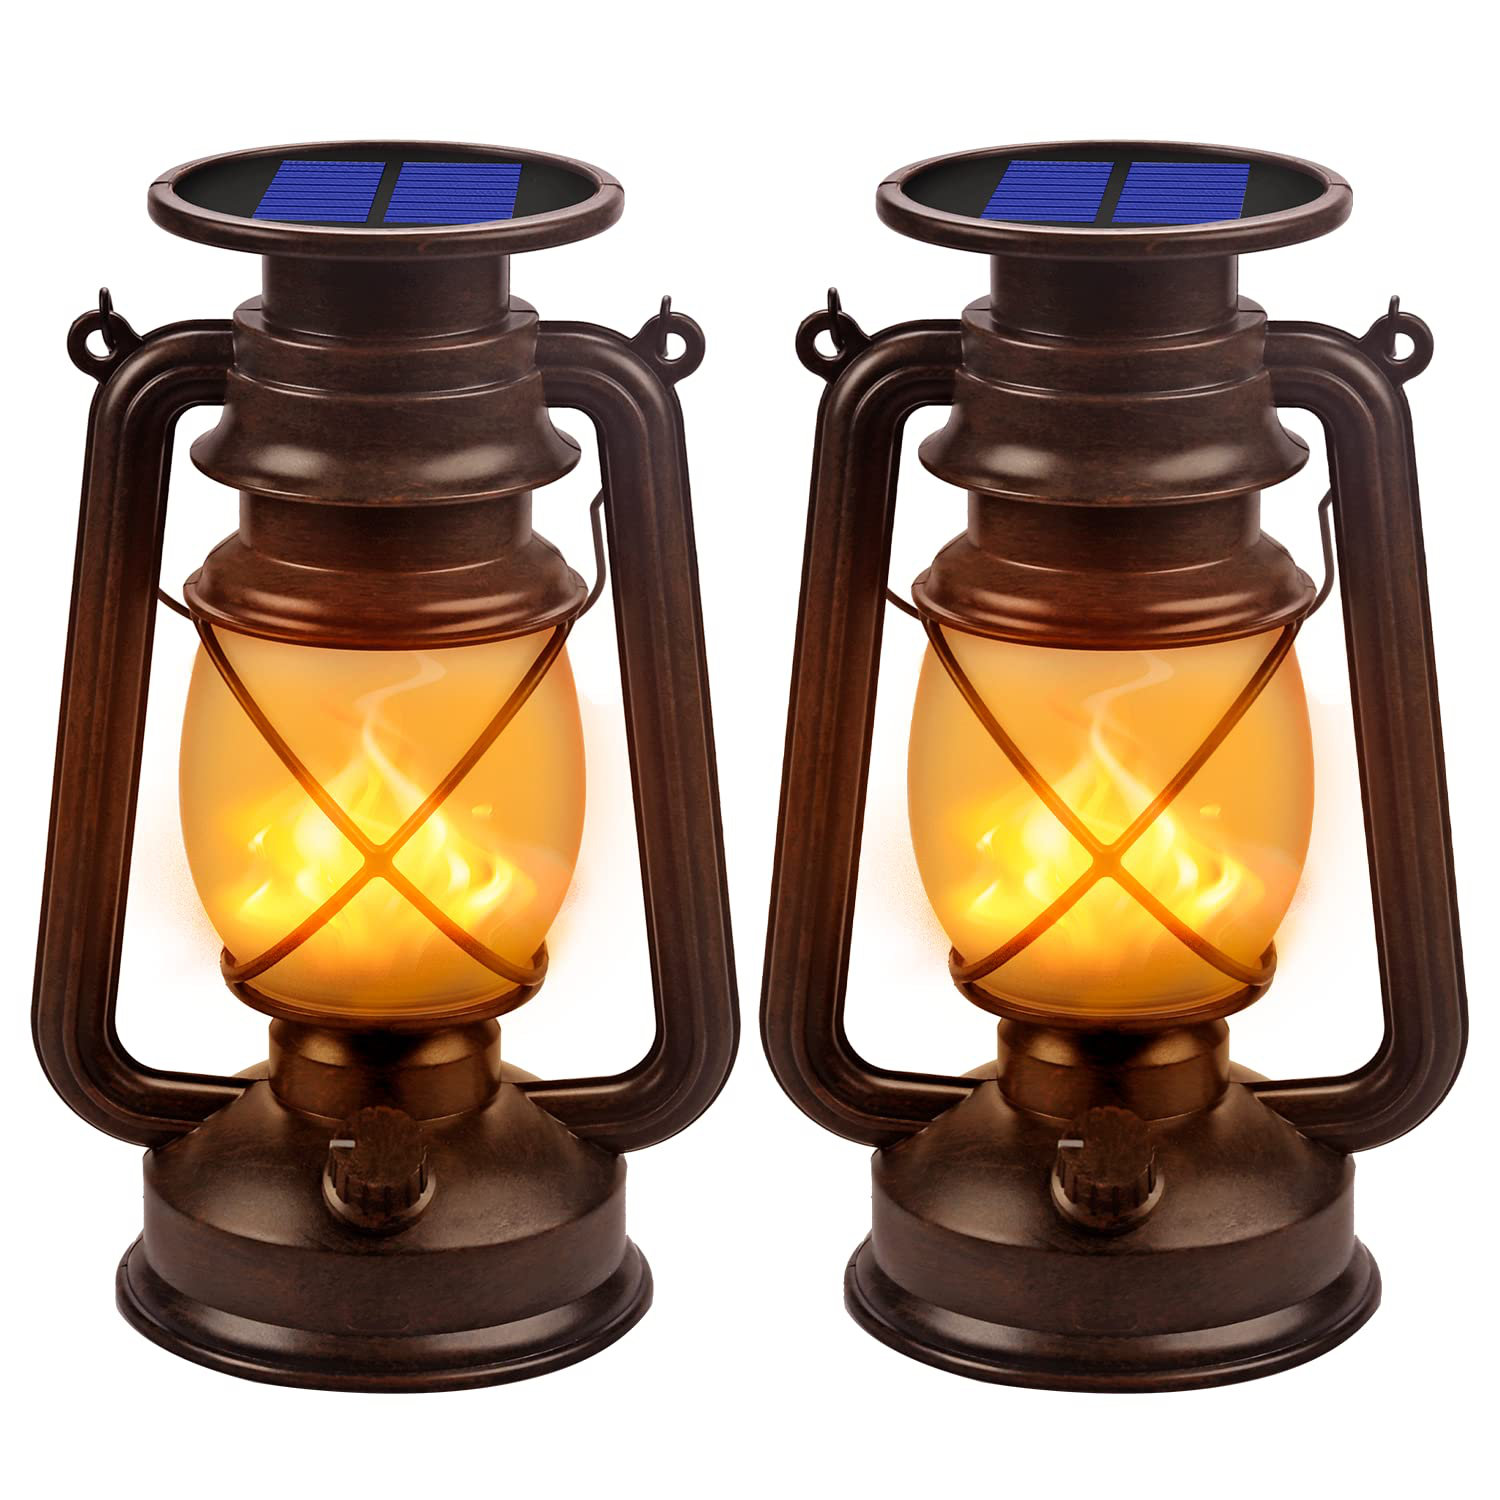 https://assets.wfcdn.com/im/28209775/compr-r85/2470/247009168/146-solar-powered-outdoor-lantern.jpg